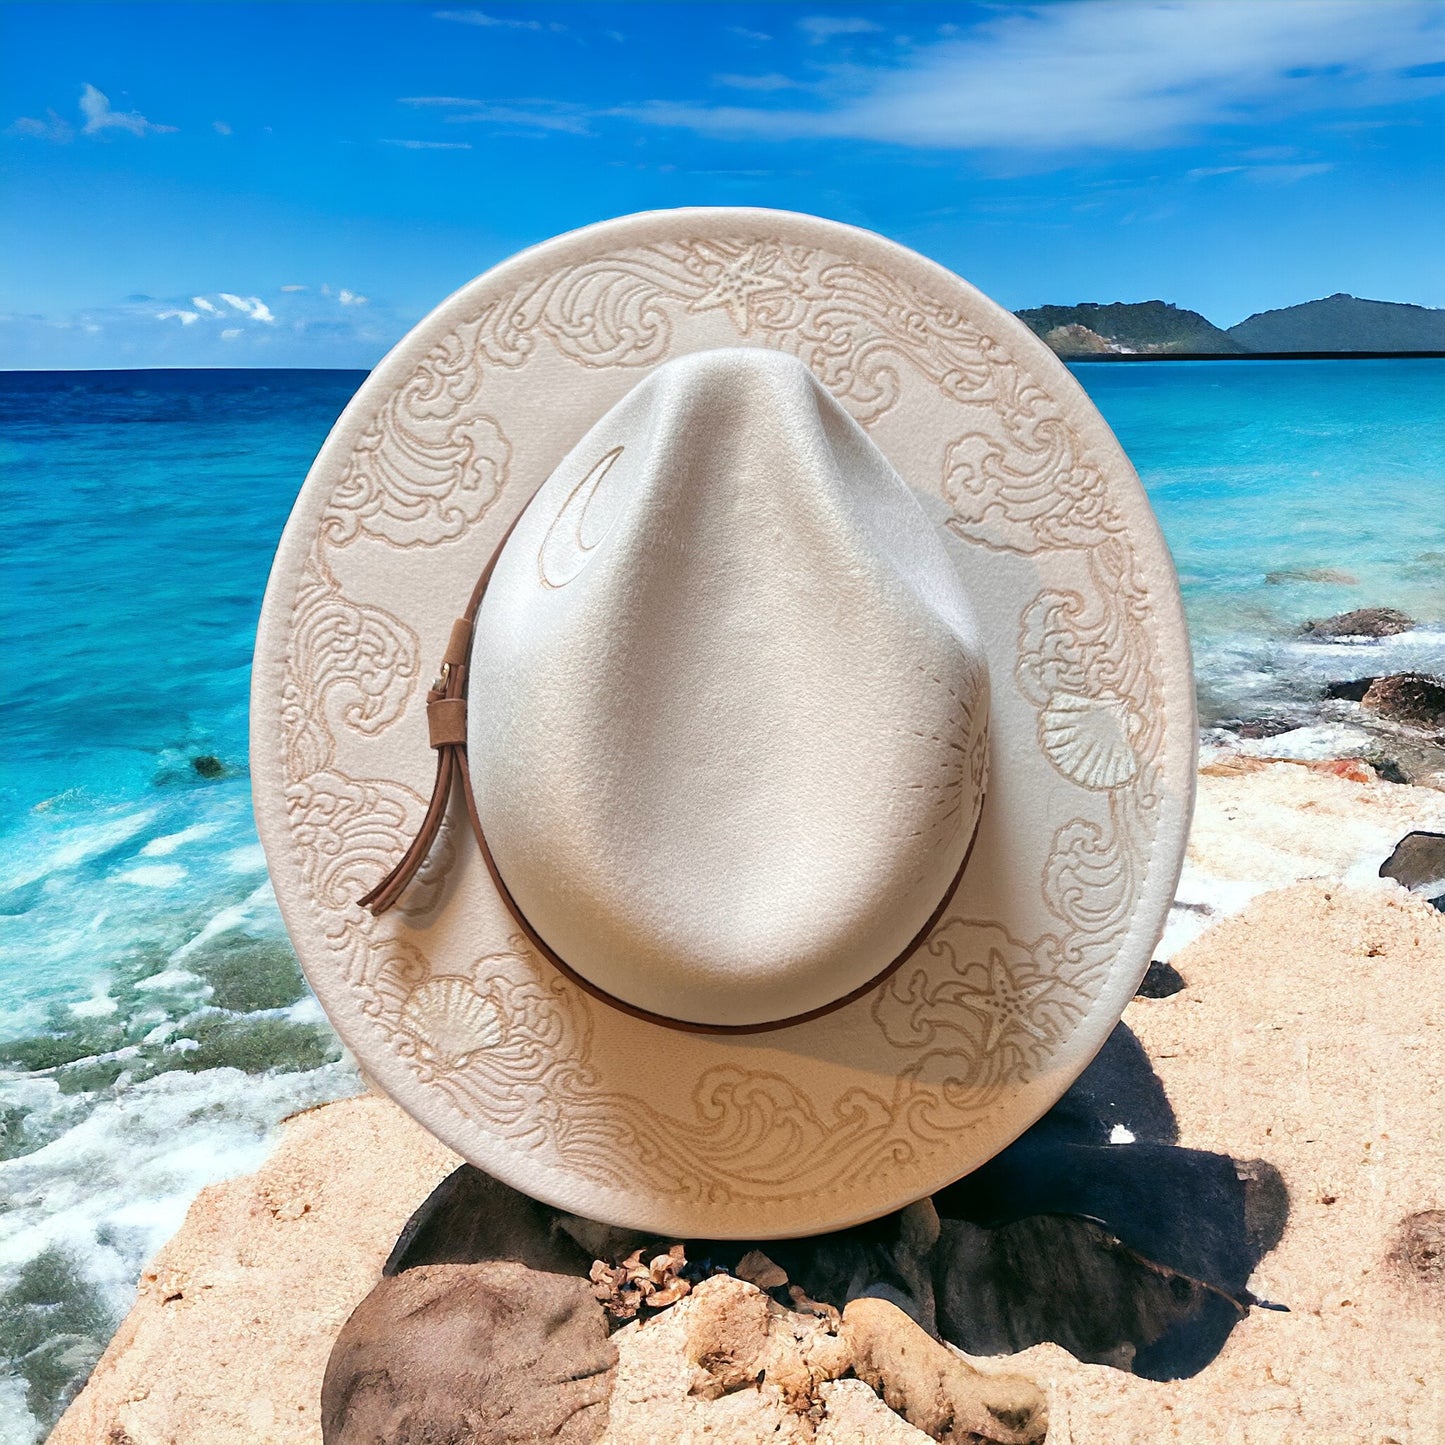 Seashore Cream hat